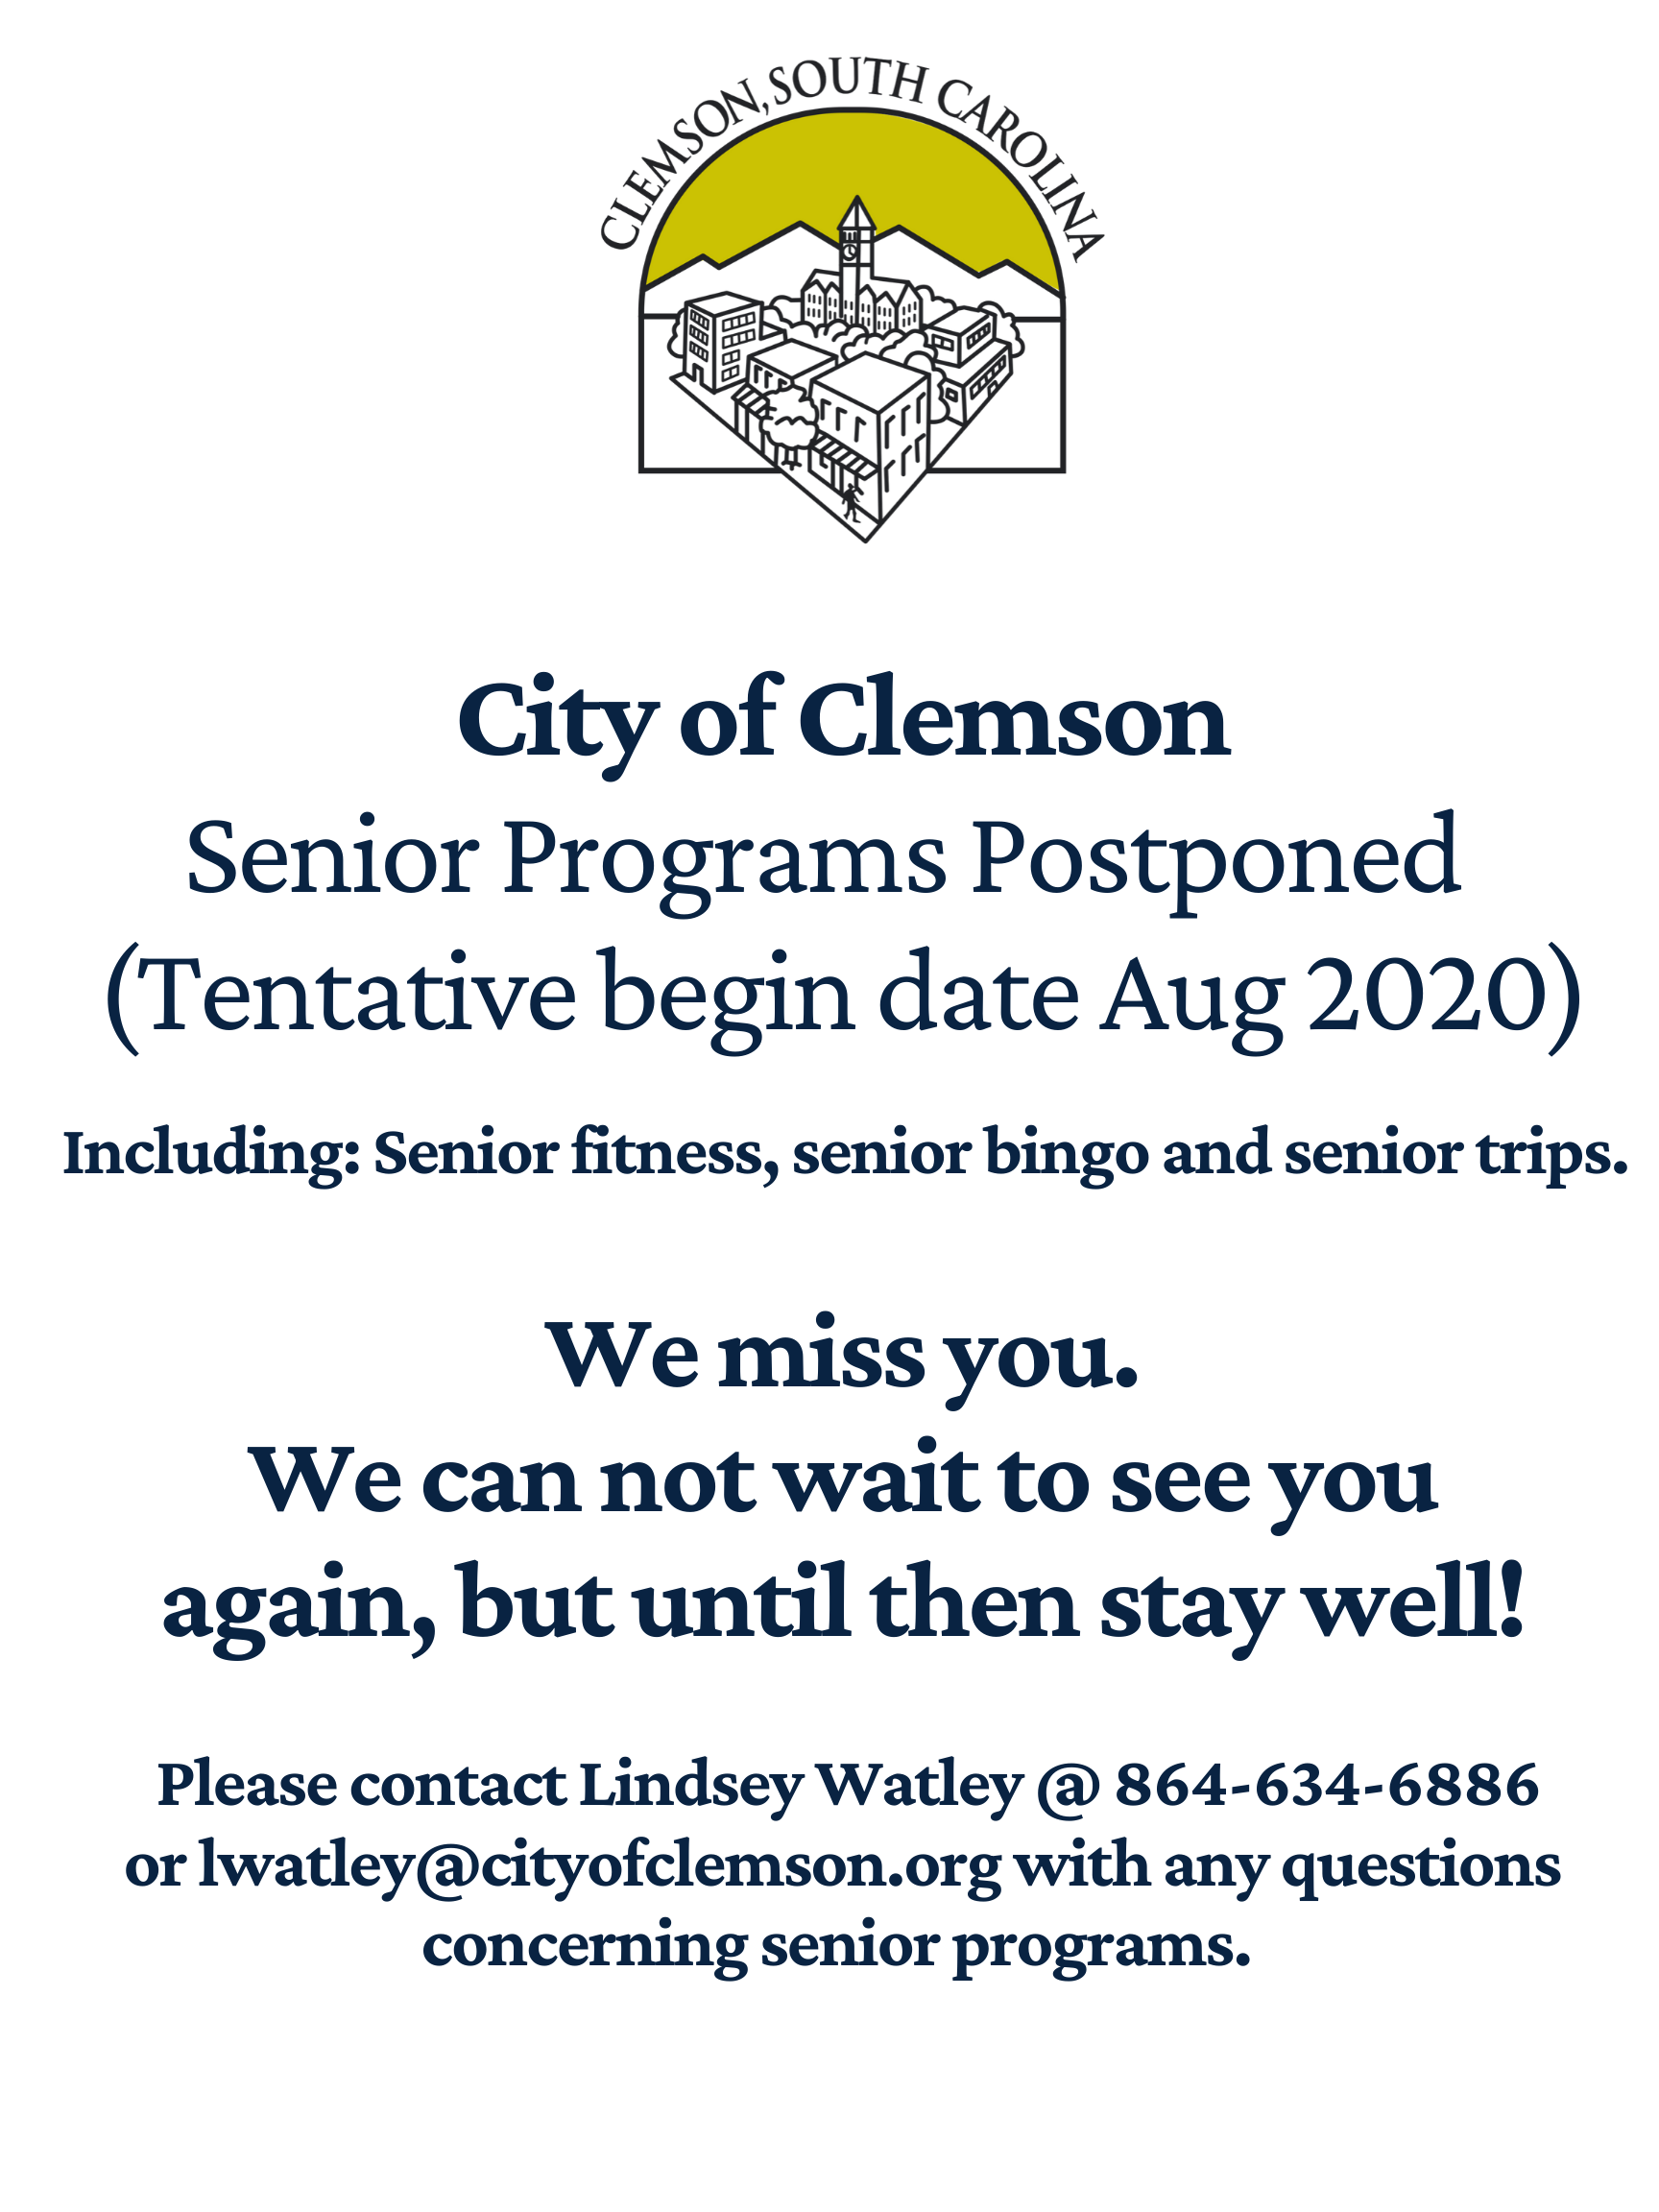 Senior Programs Postponed - tentative start date August